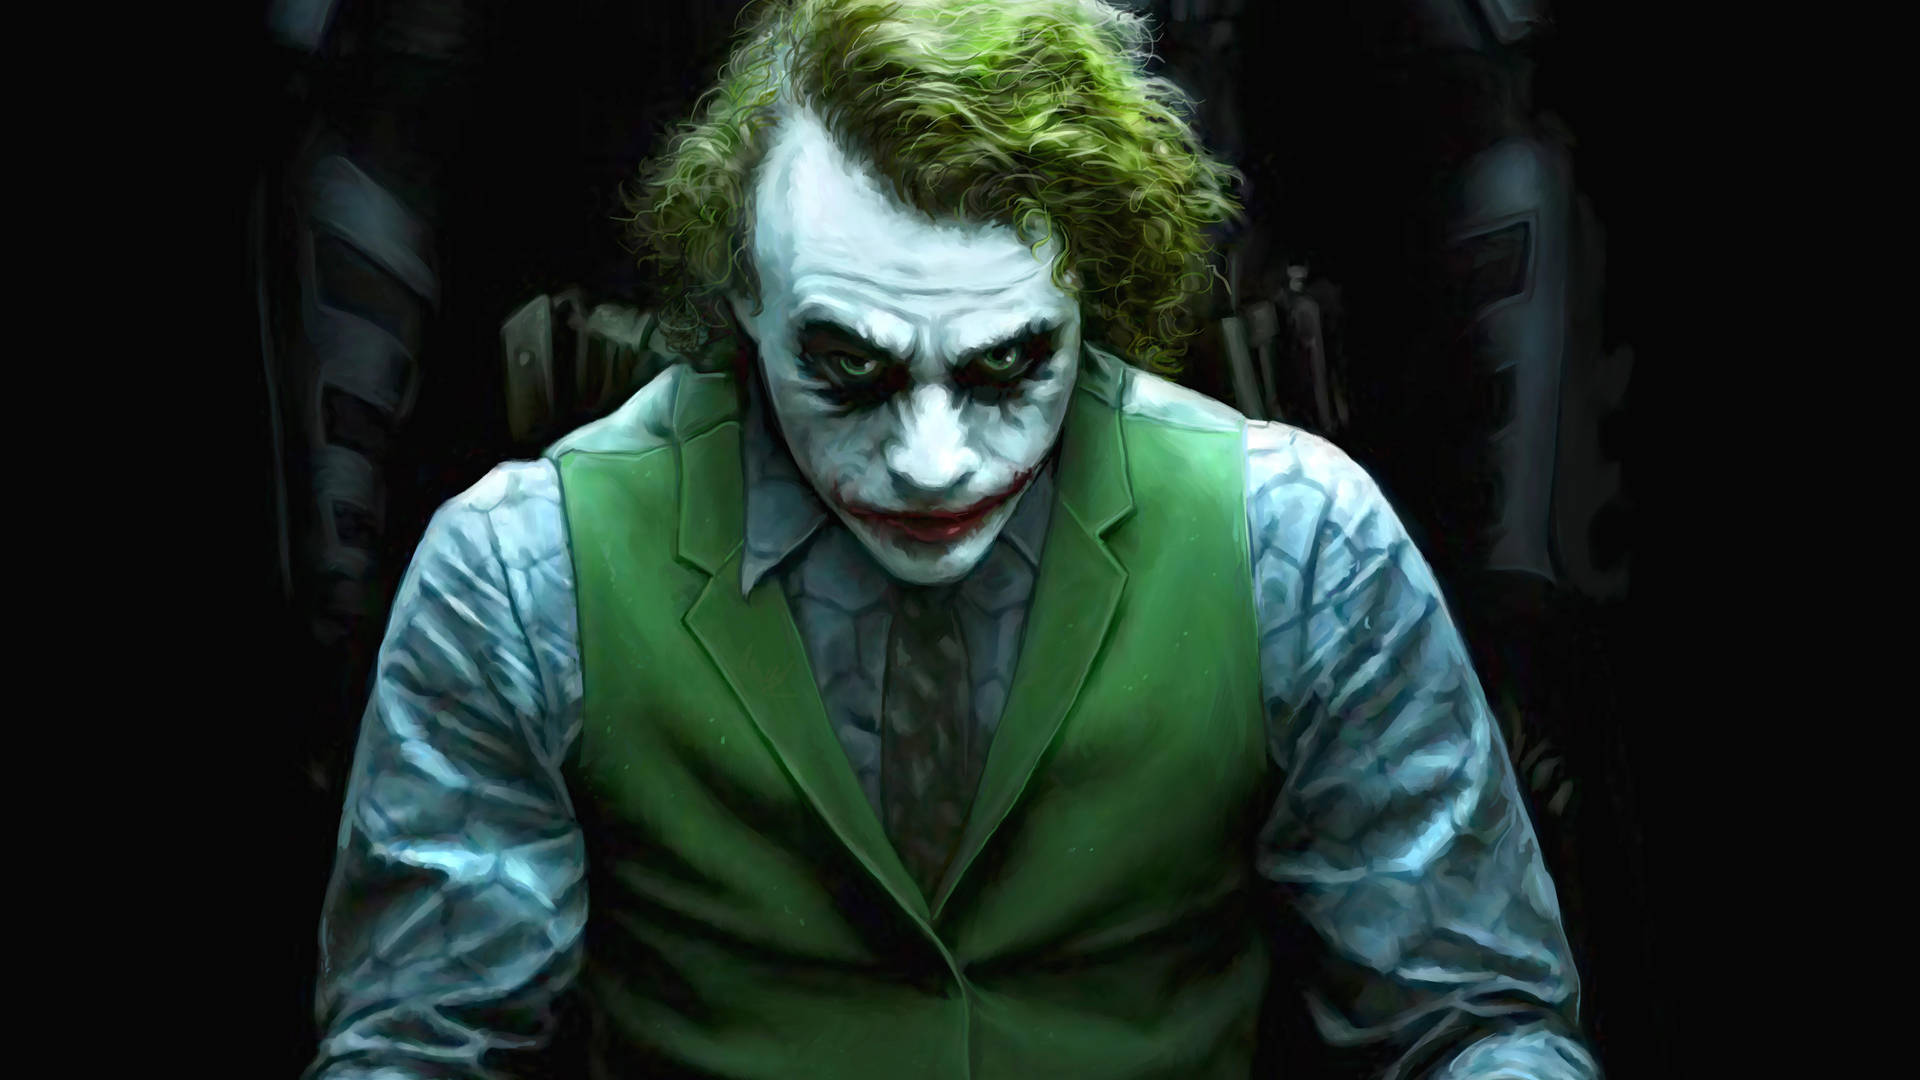 500 Joker Images  Download Free Pictures On Unsplash